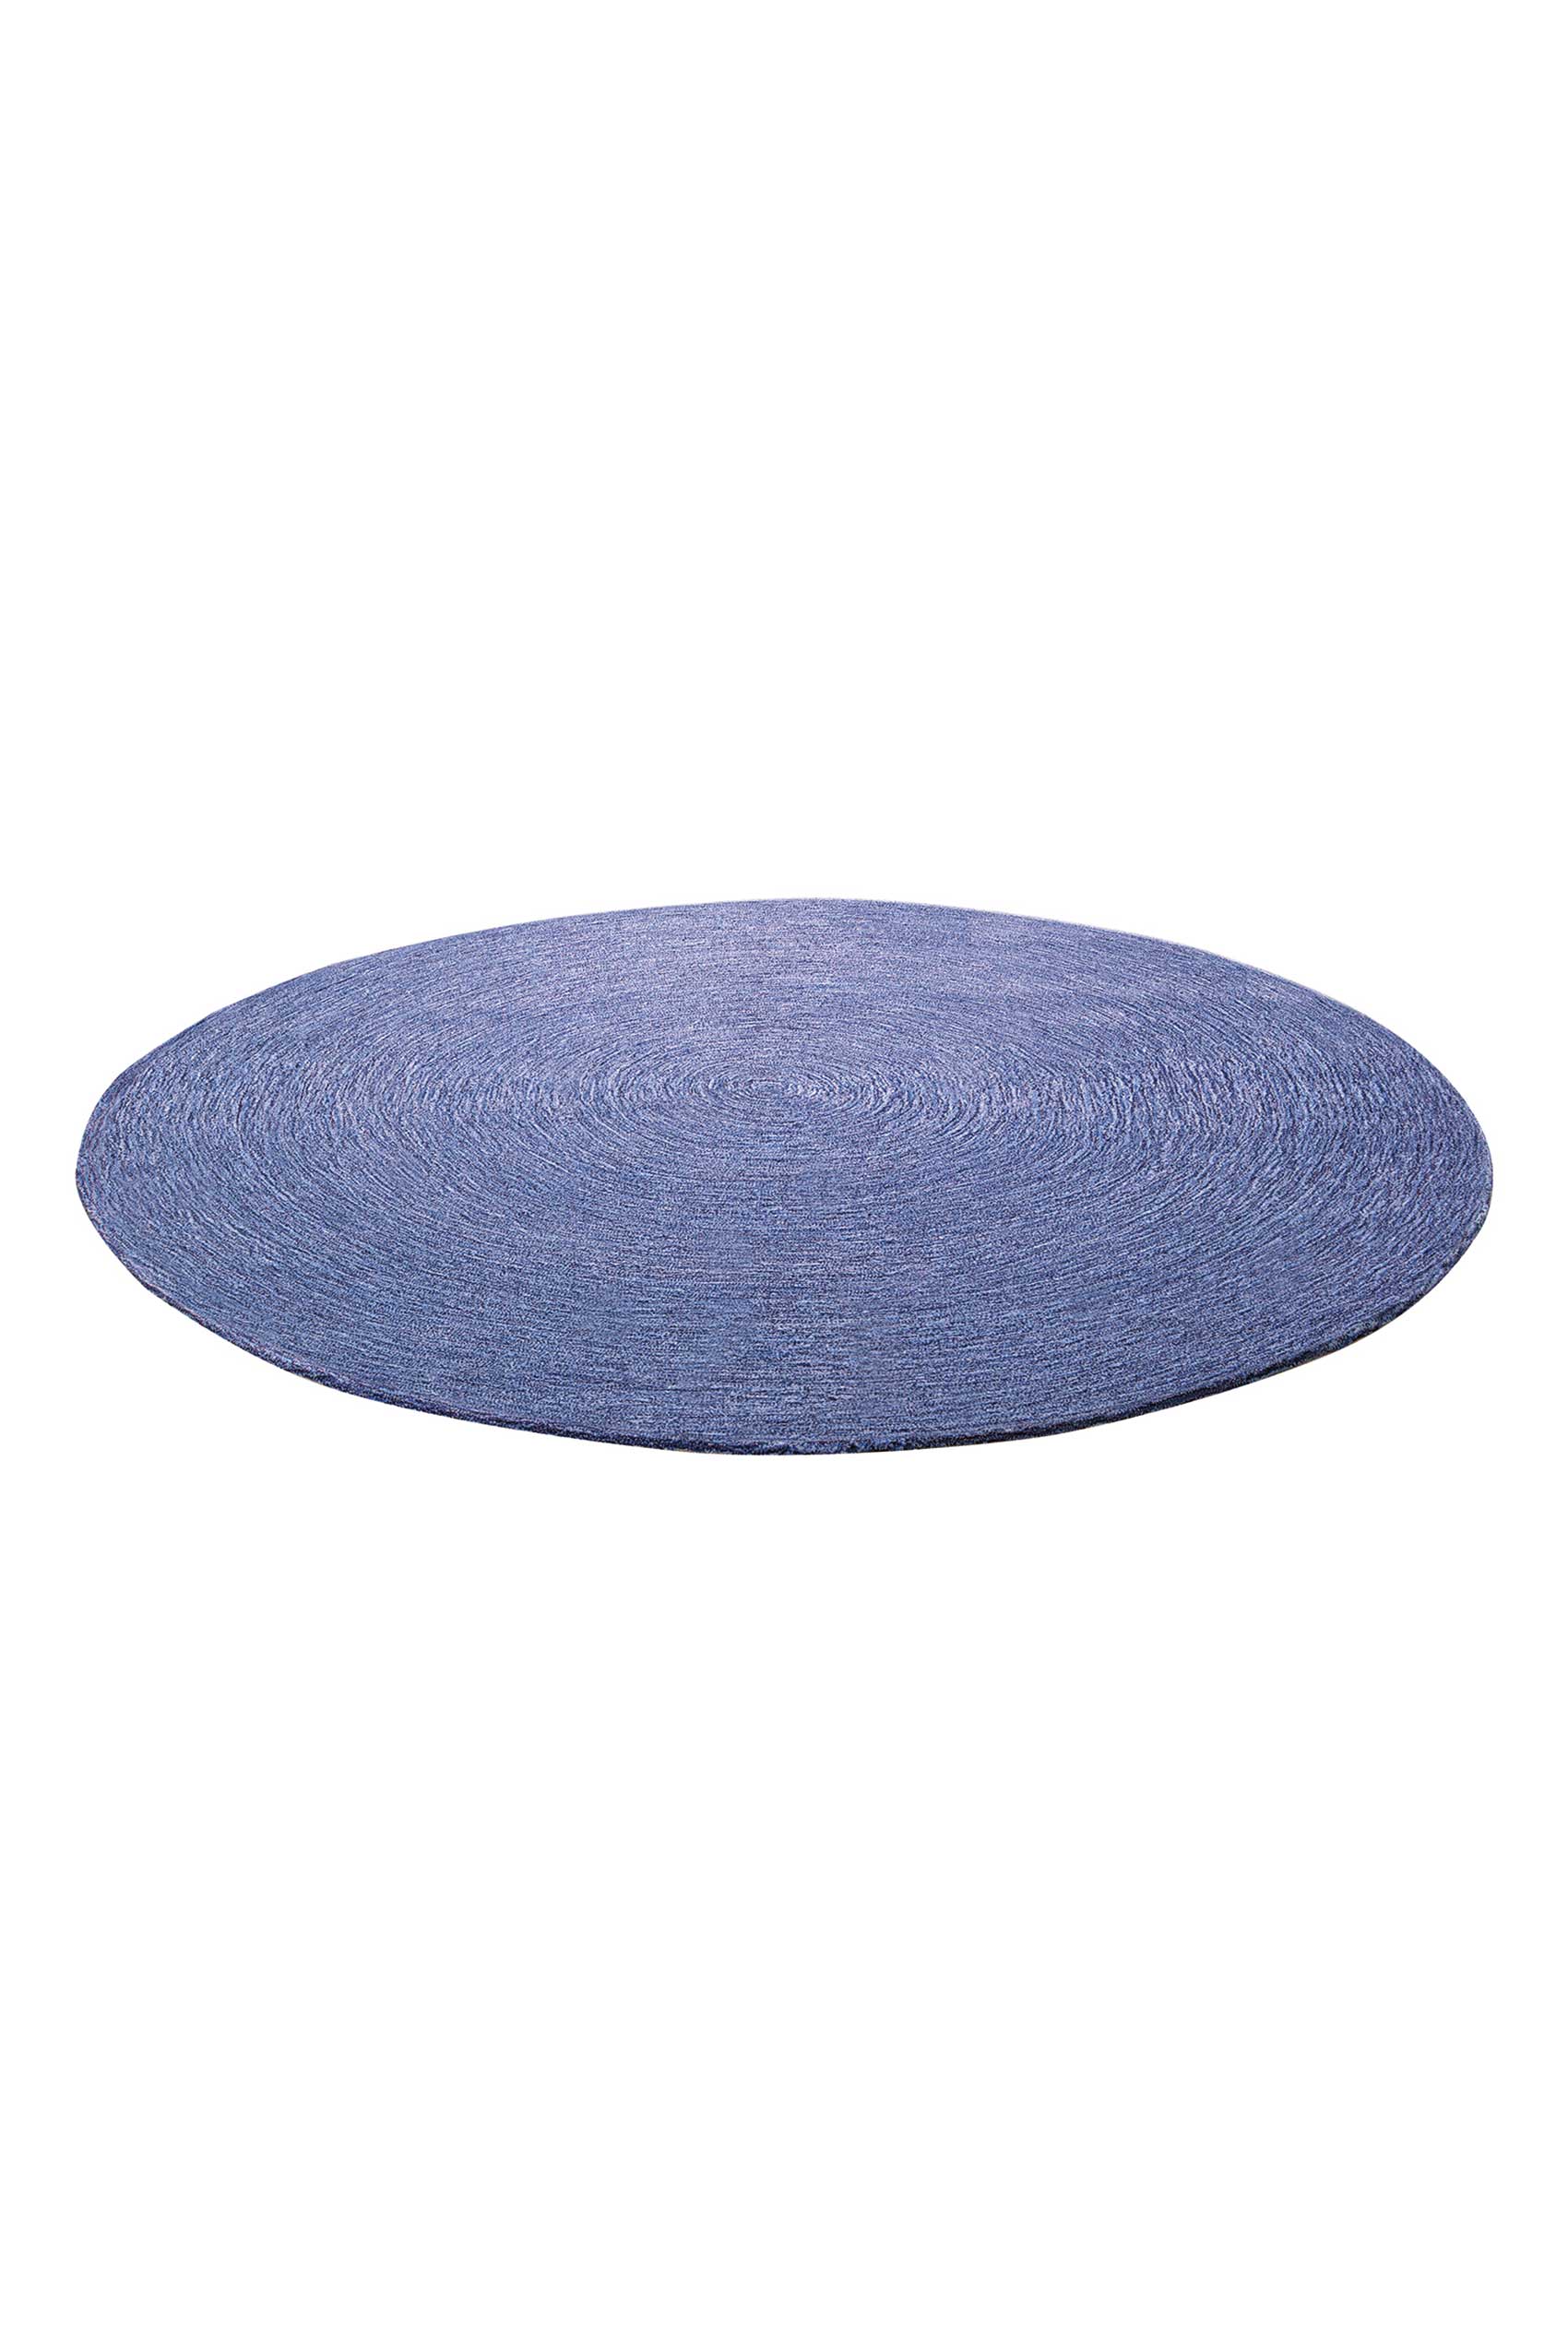 Esprit Teppich Rund Blau meliert aus Wolle » Colour In Motion « - Ansicht 2